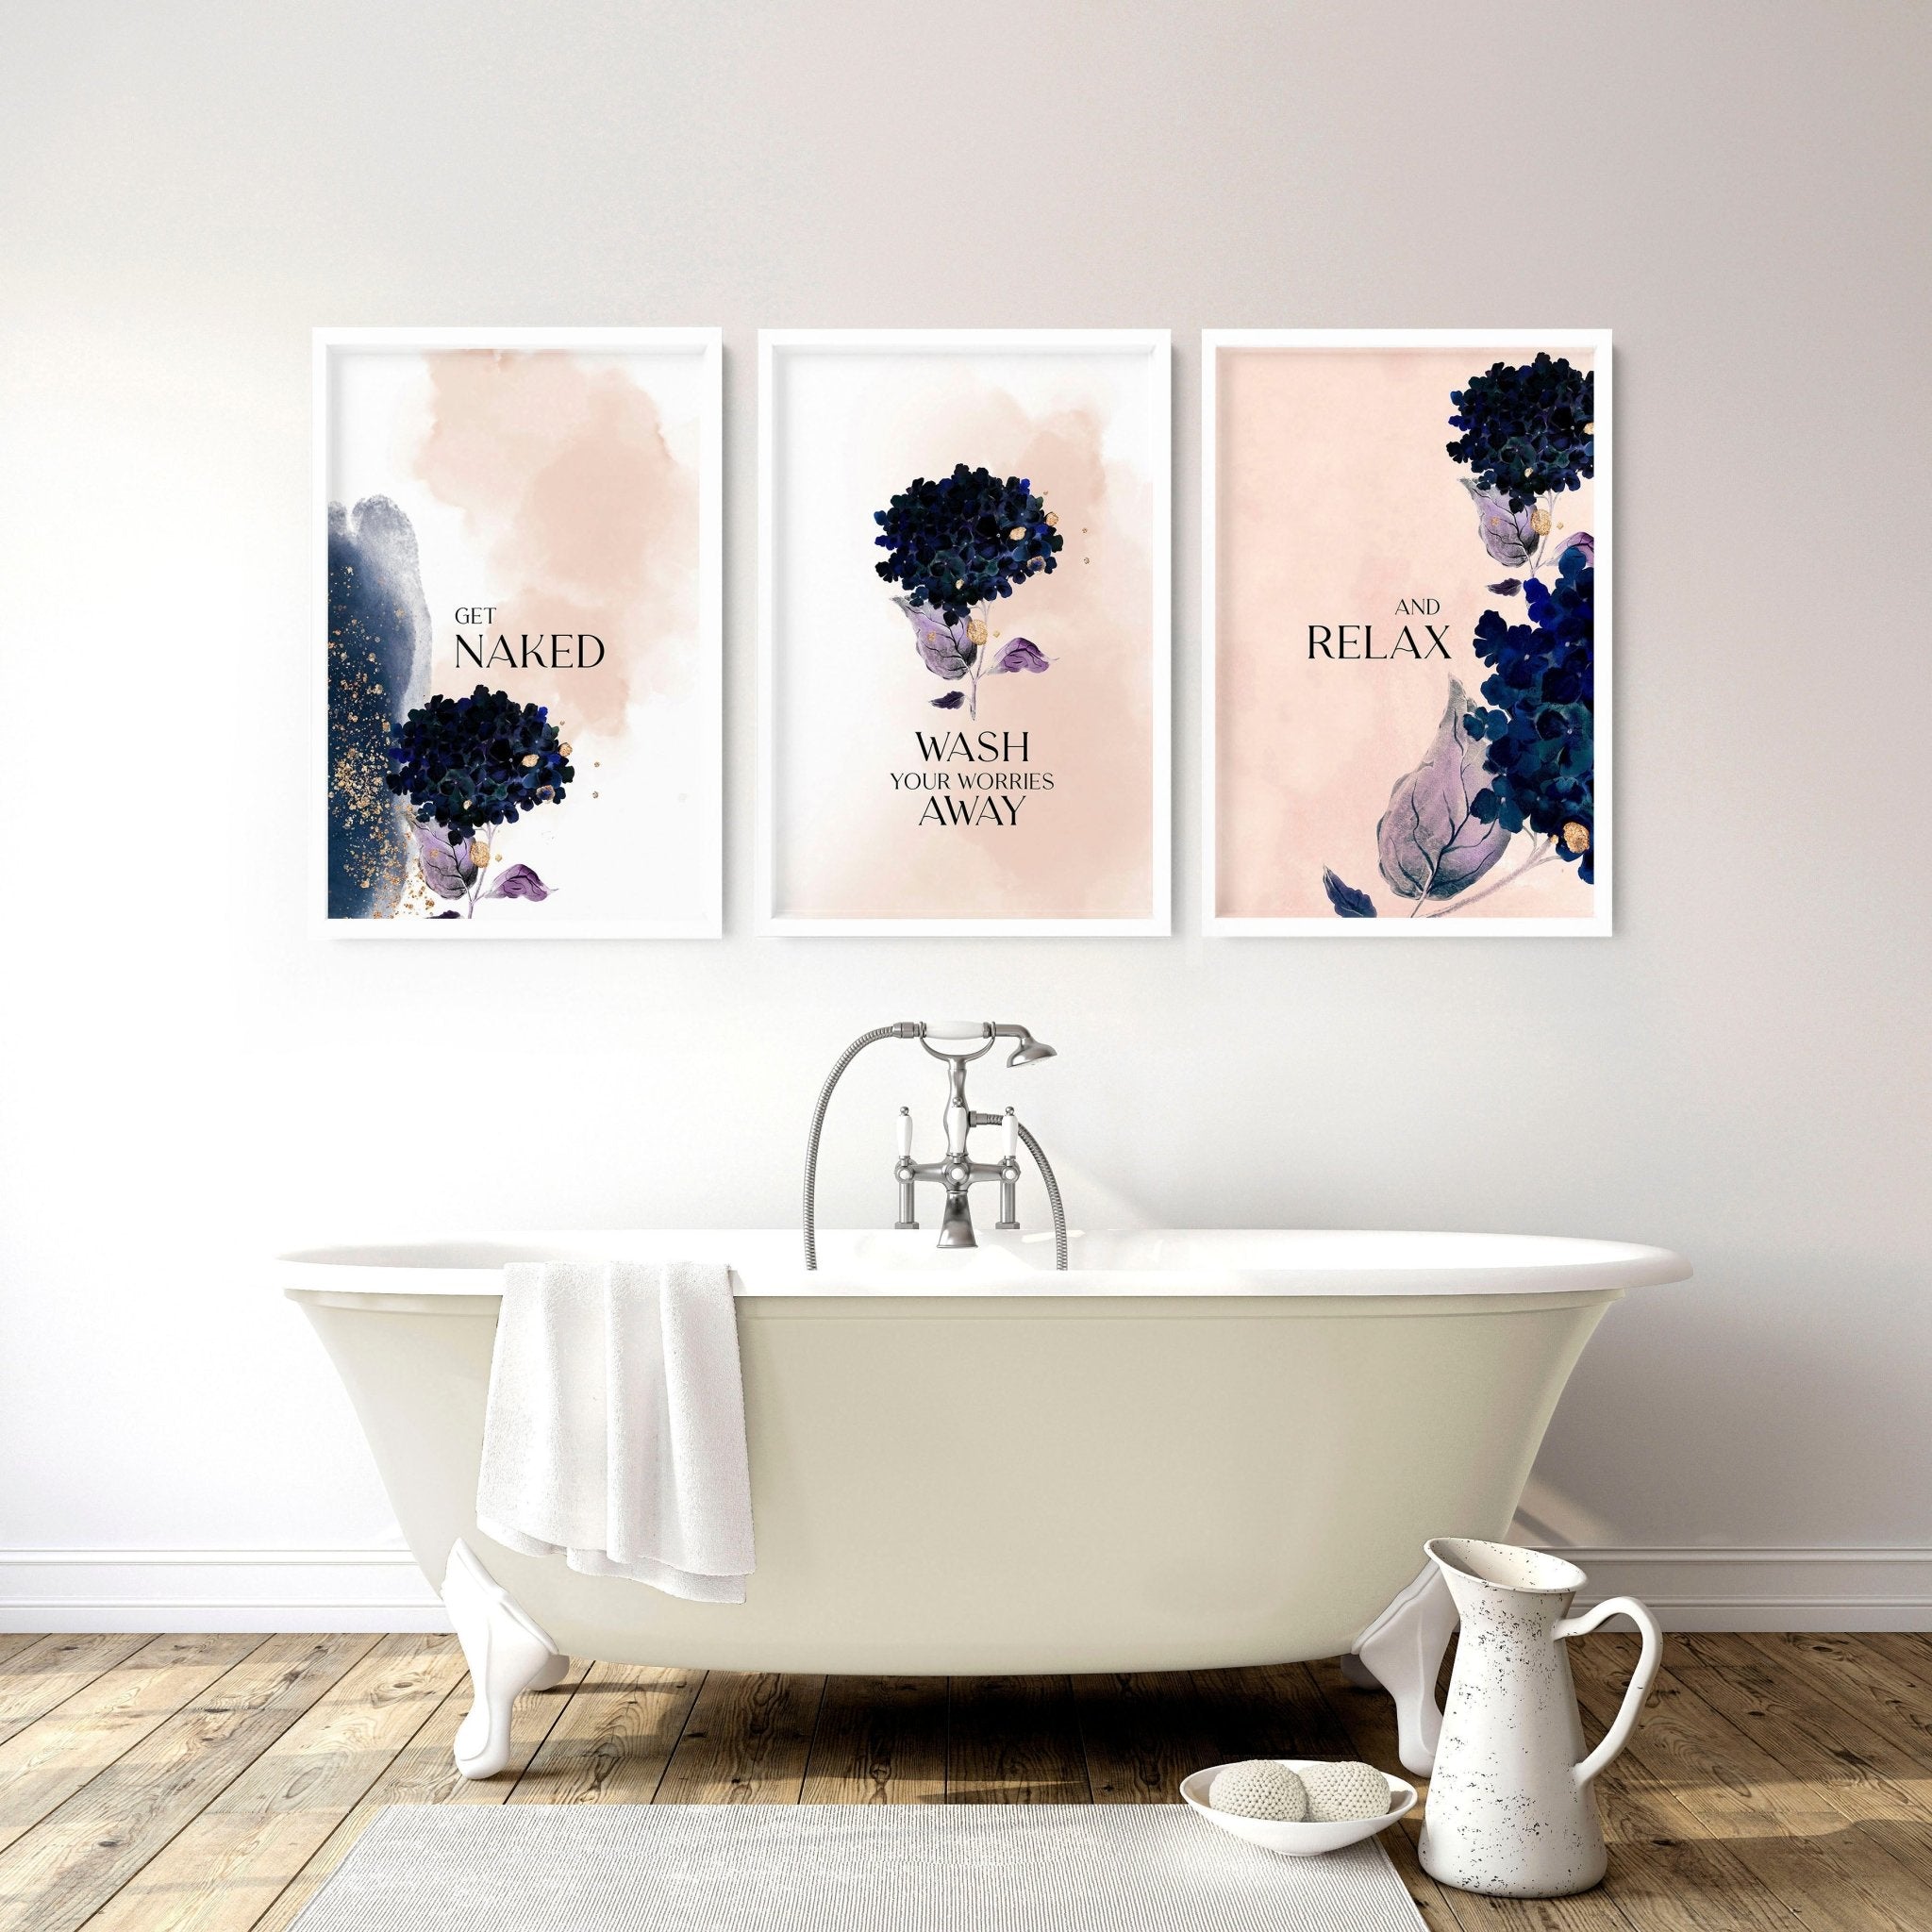 Shabby Chic enmarcado conjunto de 3 impresiones de arte de pared para la decoración del hogar del baño, impresiones de pared de vegetación de acuarela botánica para la decoración del spa del inodoro